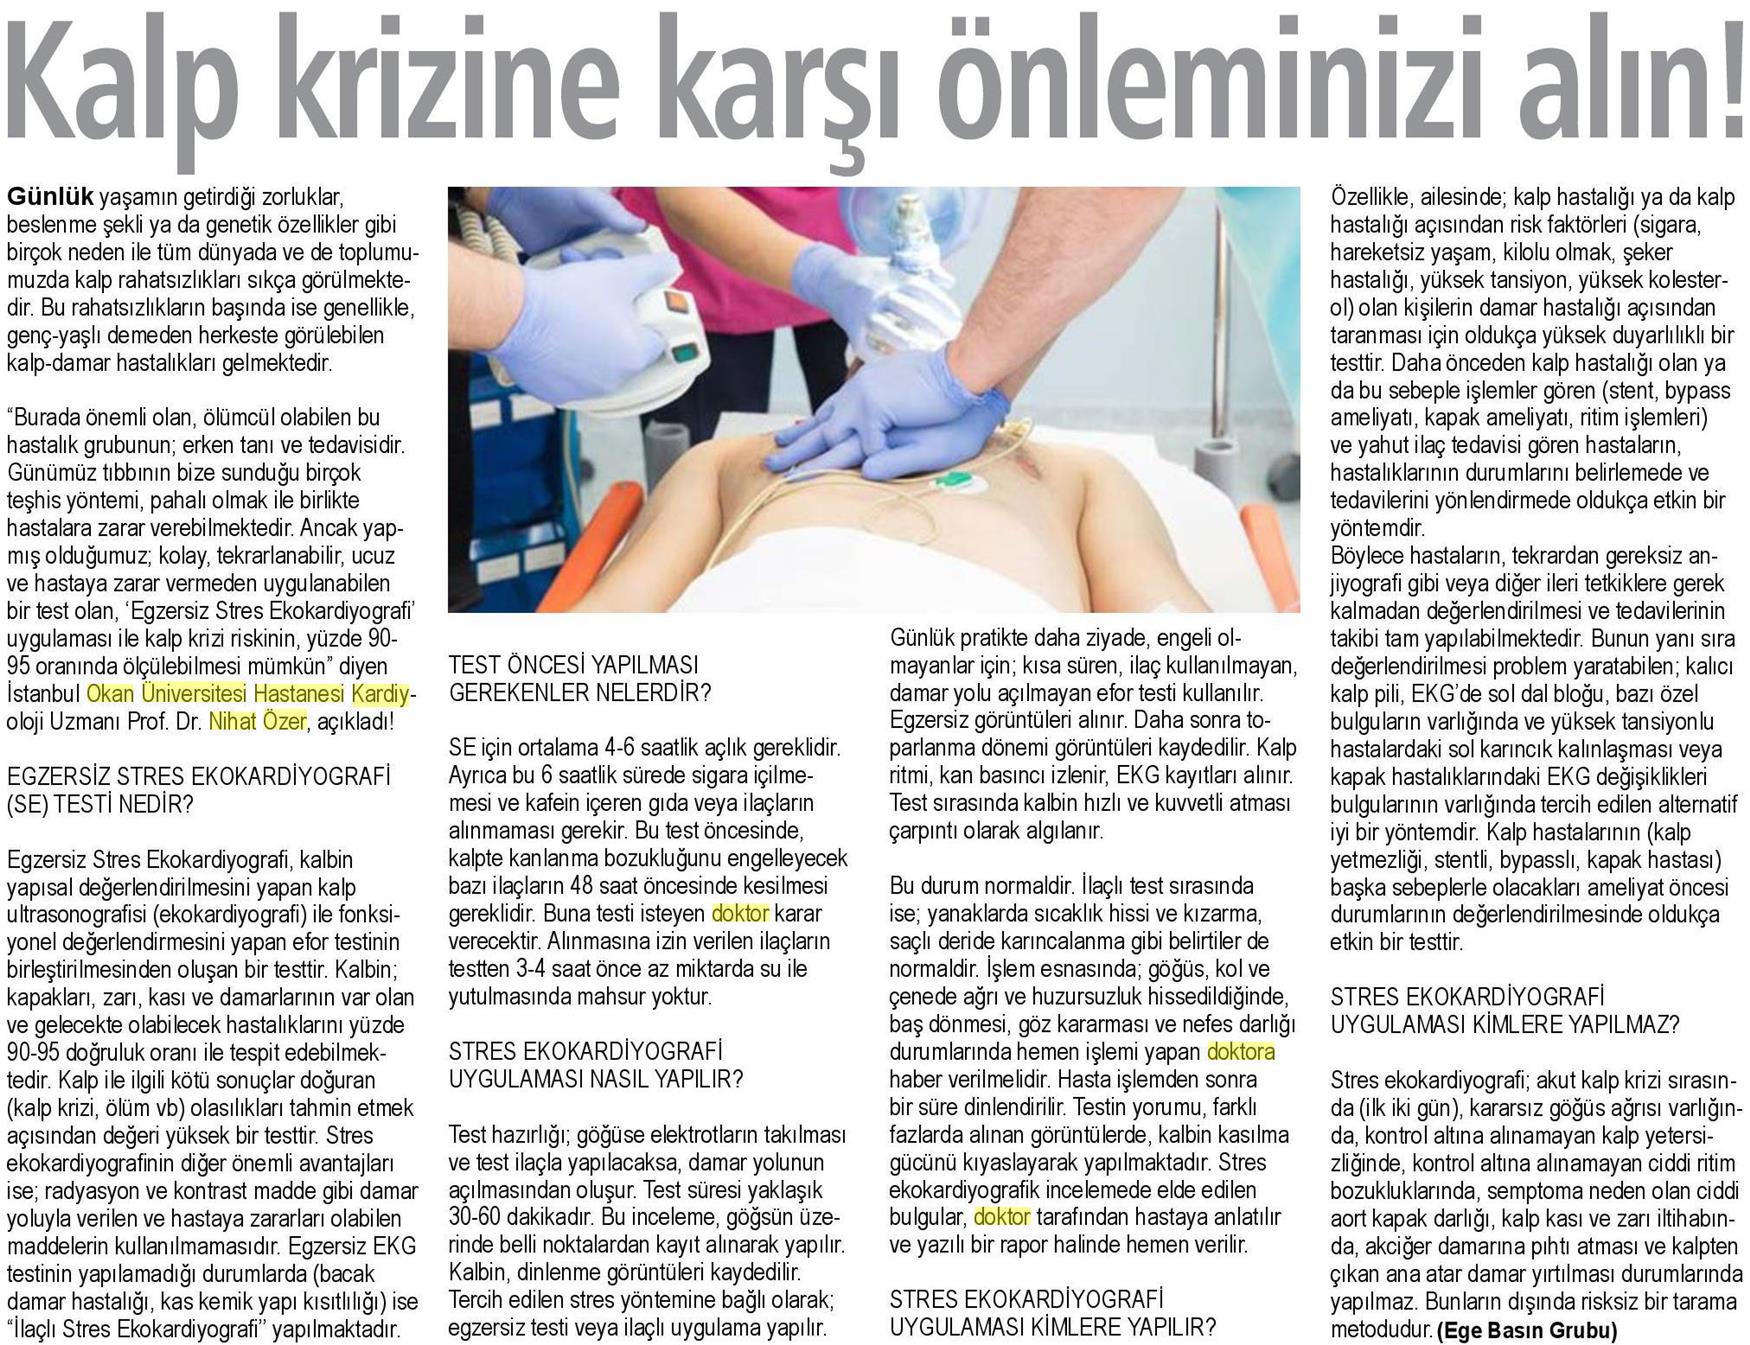 10.04.2019 Sağlık Gazetesi KALP KRİZİNE KARŞI ÖNLEMİNİZİ ALIN!